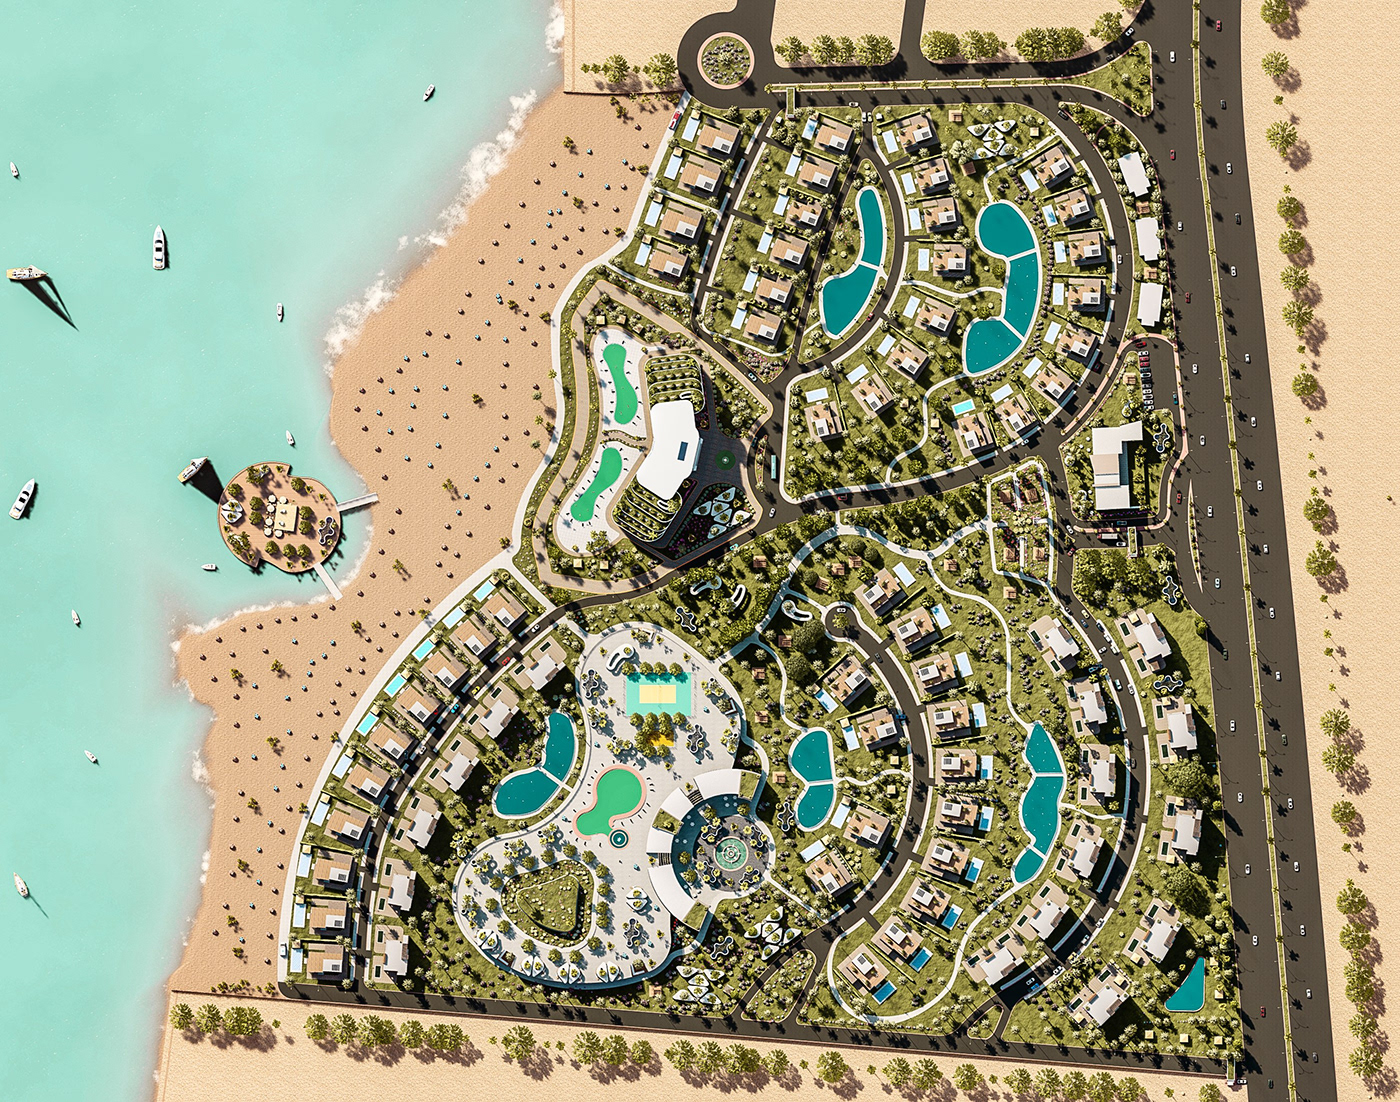 resort hotel Villa architecture chalet visualization Urban Landscape beach water